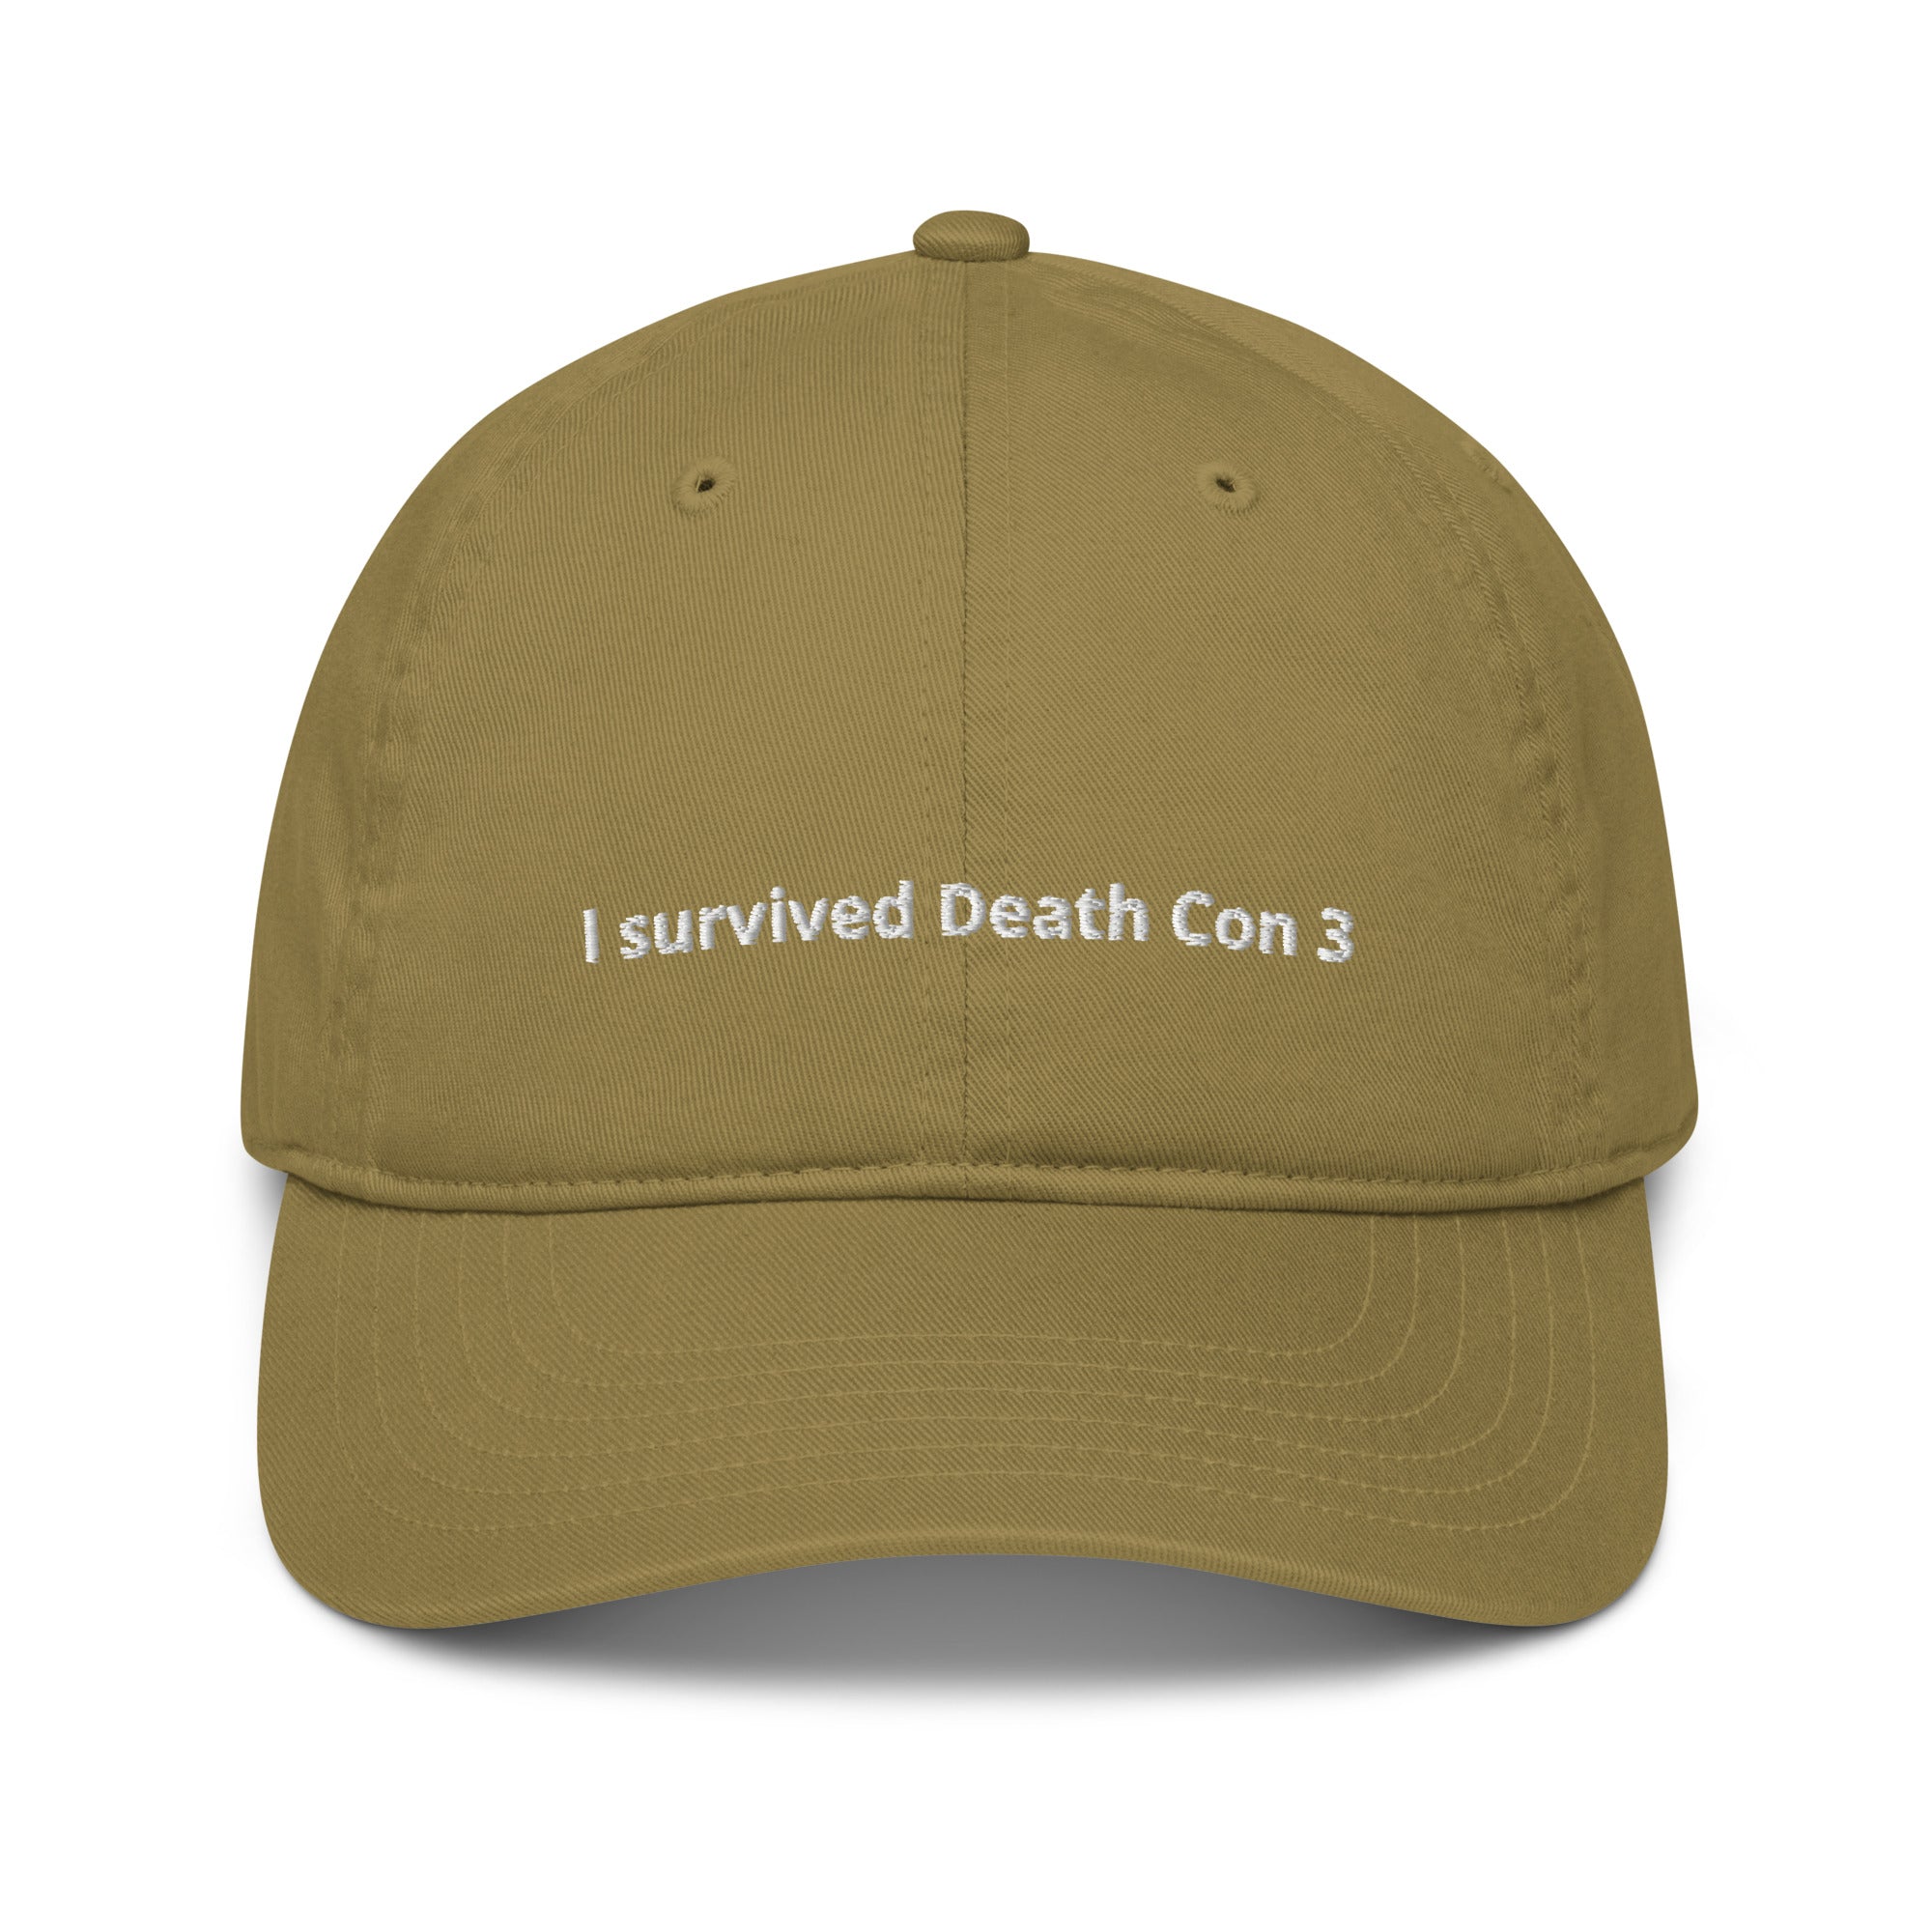 Death Con 3 - Dad Hat